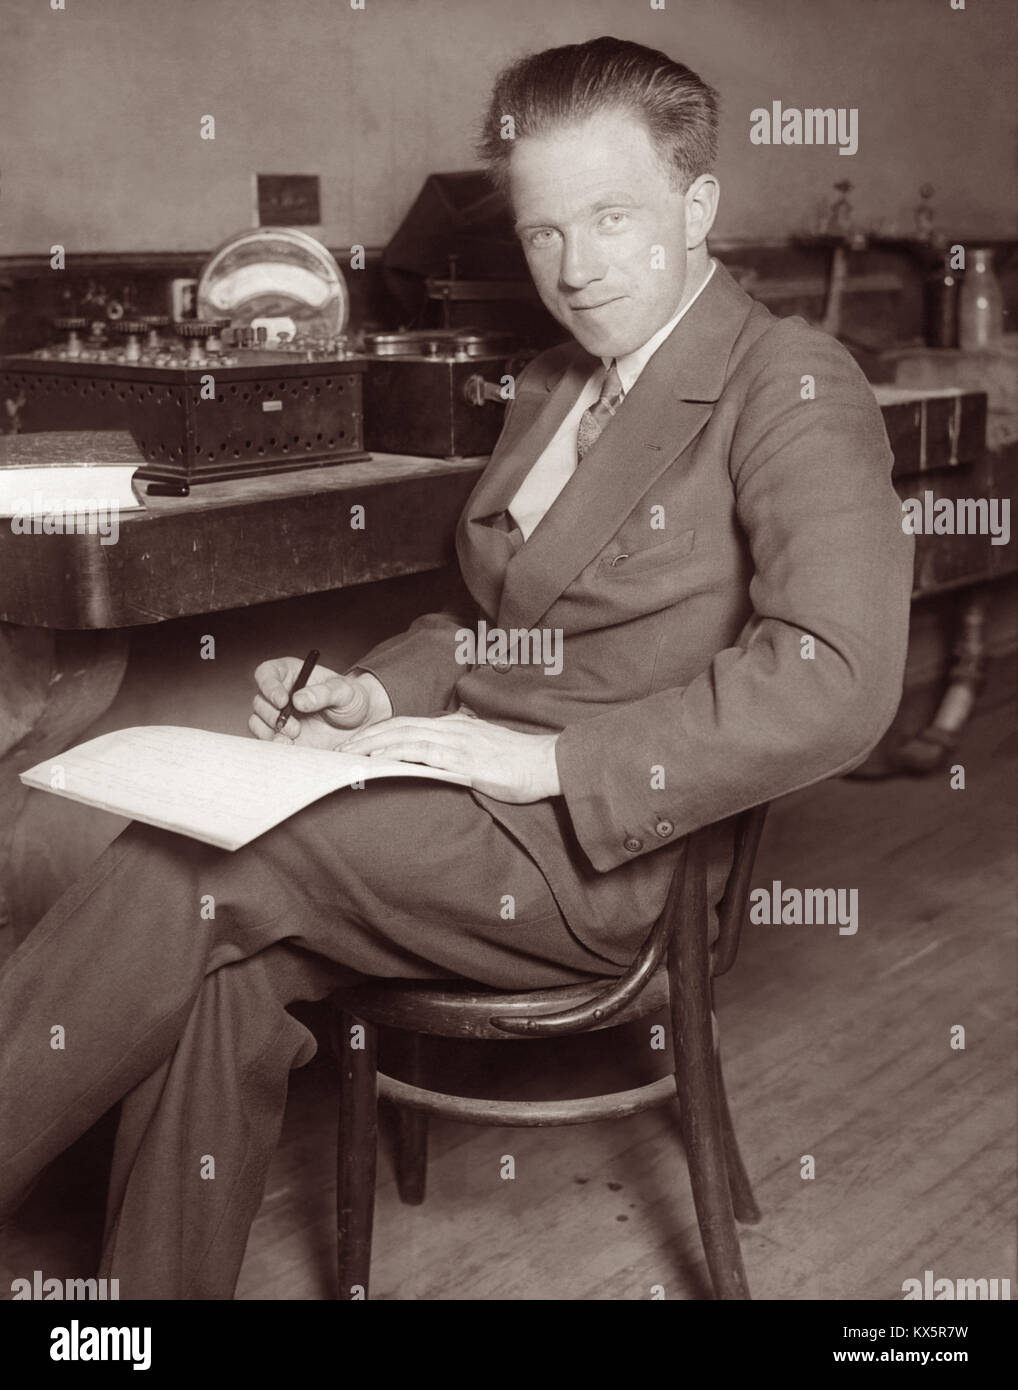 Werner Heisenberg (1901-1976), deutscher theoretischer Physiker und Pionier der Quantenmechanik, gewann die 1932 Nobelpreis für Physik für seine Theorie und Anwendungen der Quantenmechanik. Stockfoto